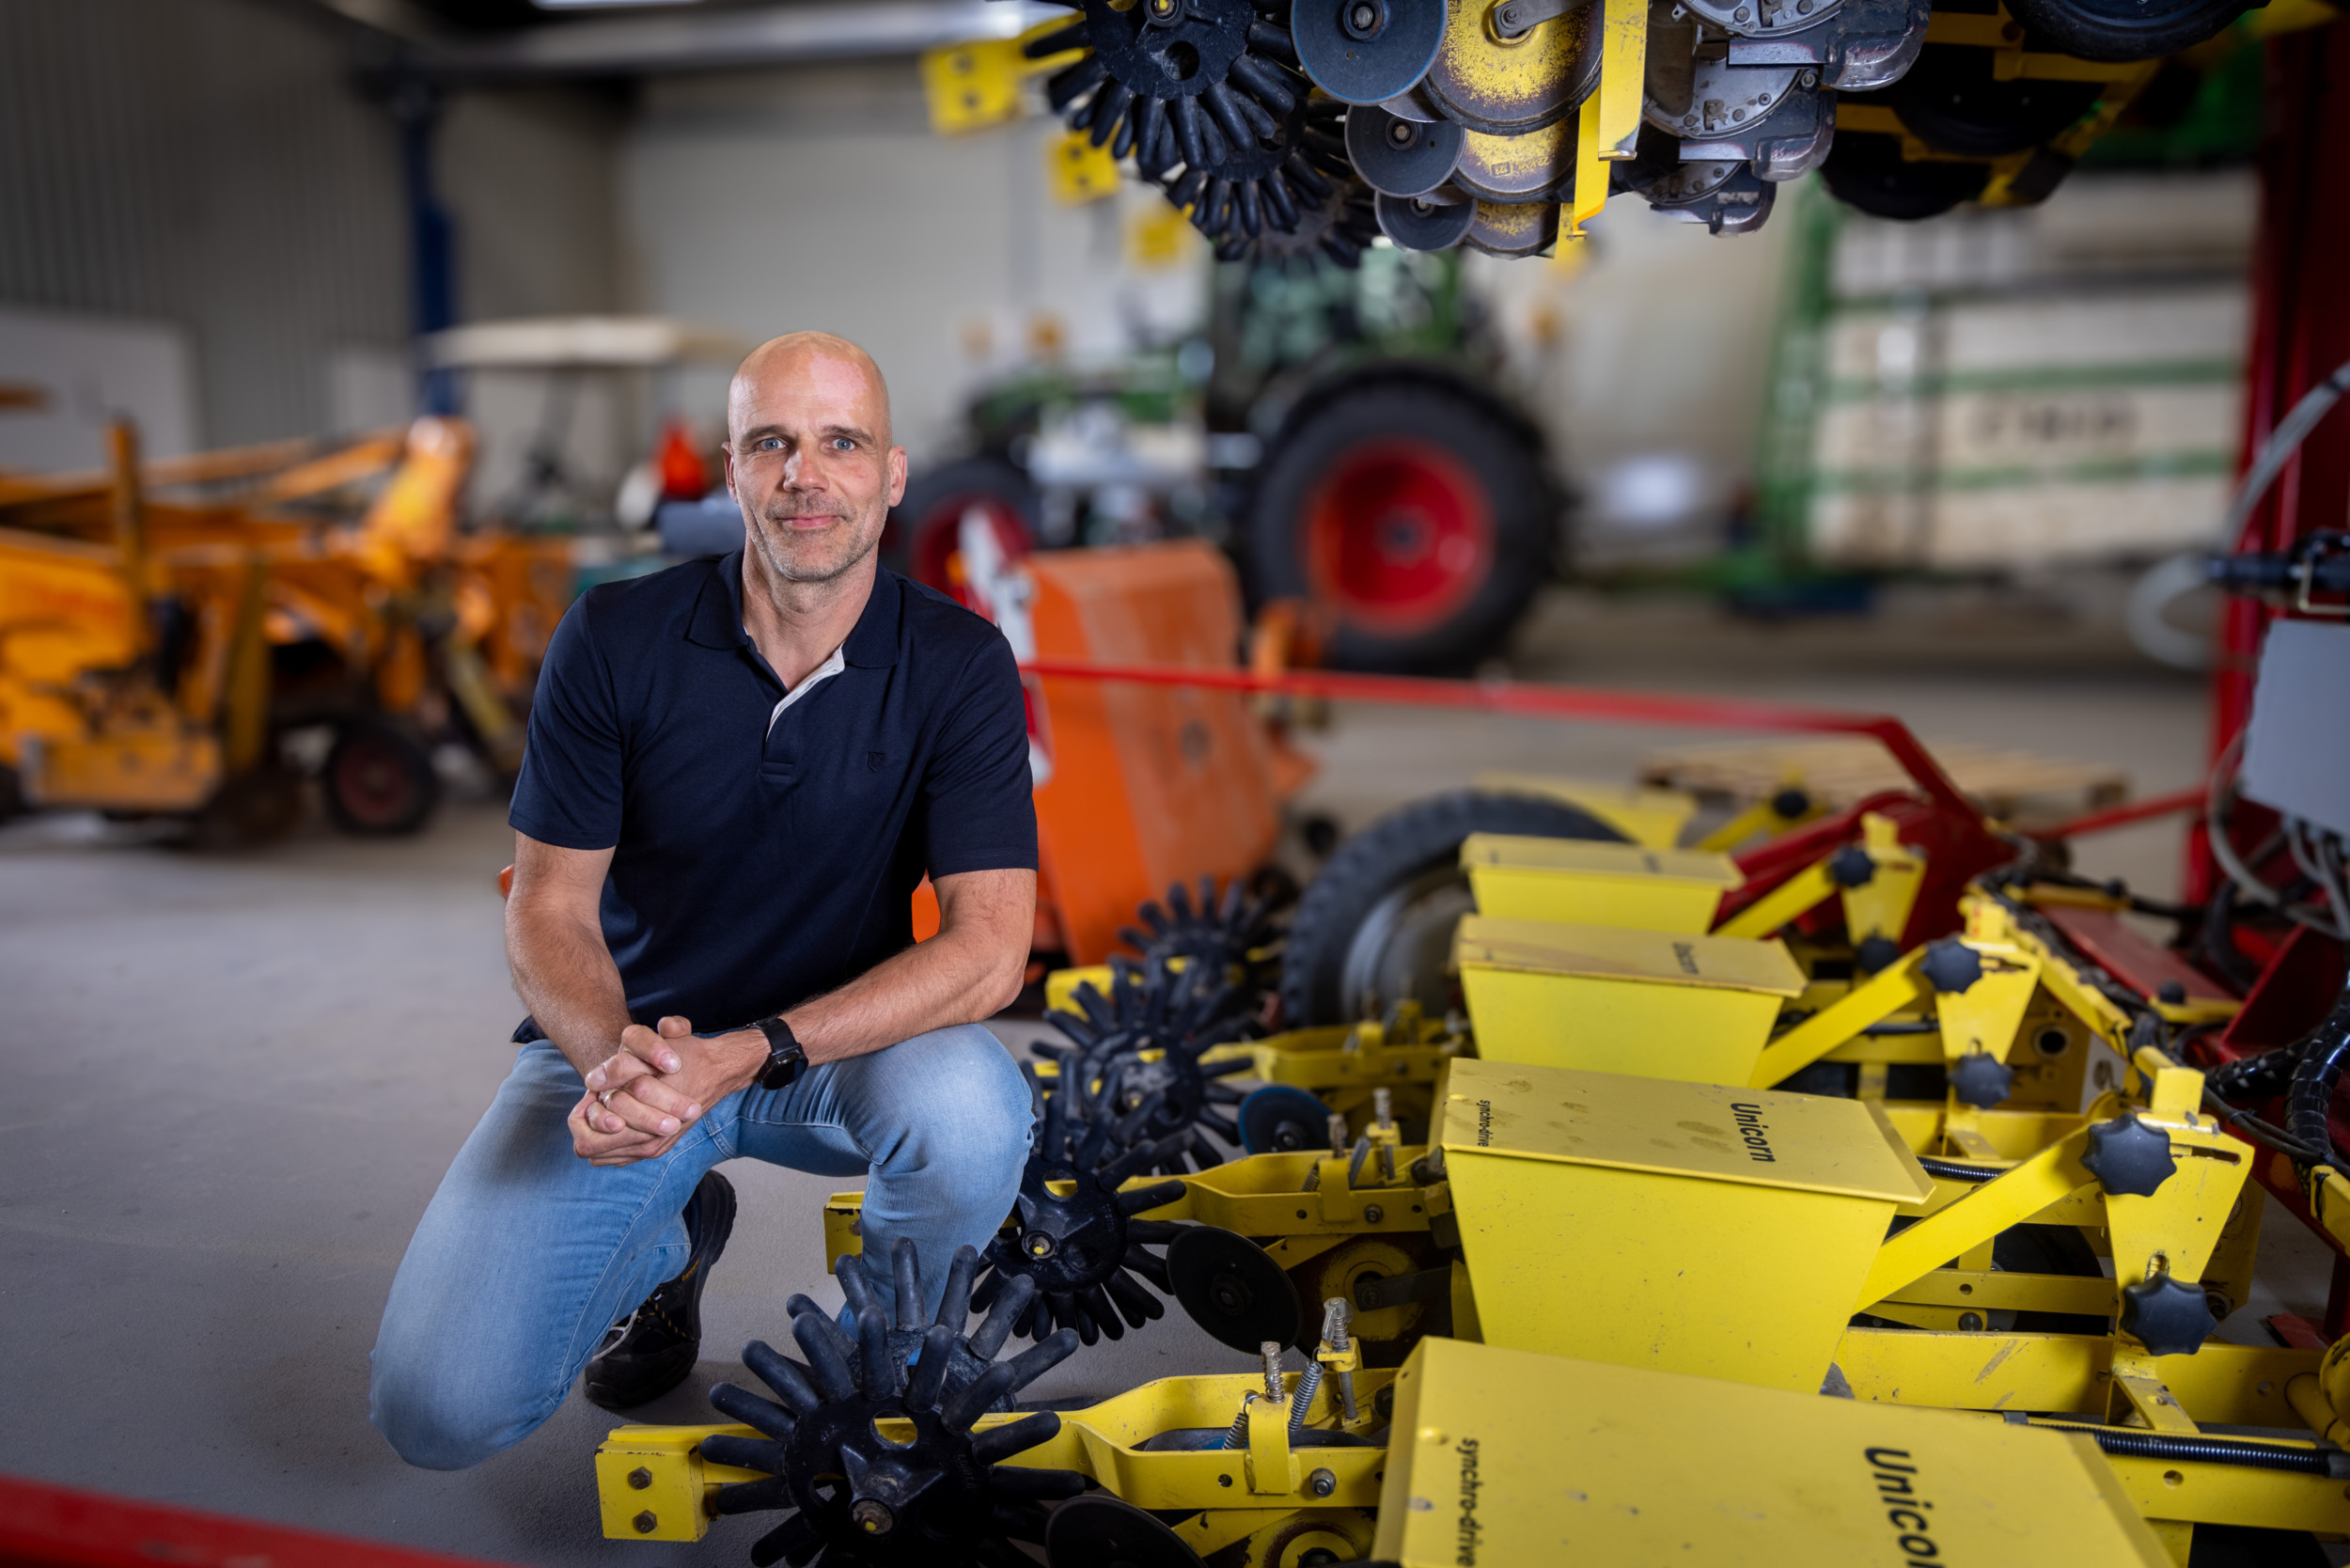 Ronnie Smits, studieleider van Aeres Hogeschool: “Agrotechniek & Engineering combineert landbouwkennis én het ontwikkelen van nieuwe of het aanpassen van machines en robots (voor de landbouw) in één studie. Dat is uniek.” – Foto: Koos Groenewold